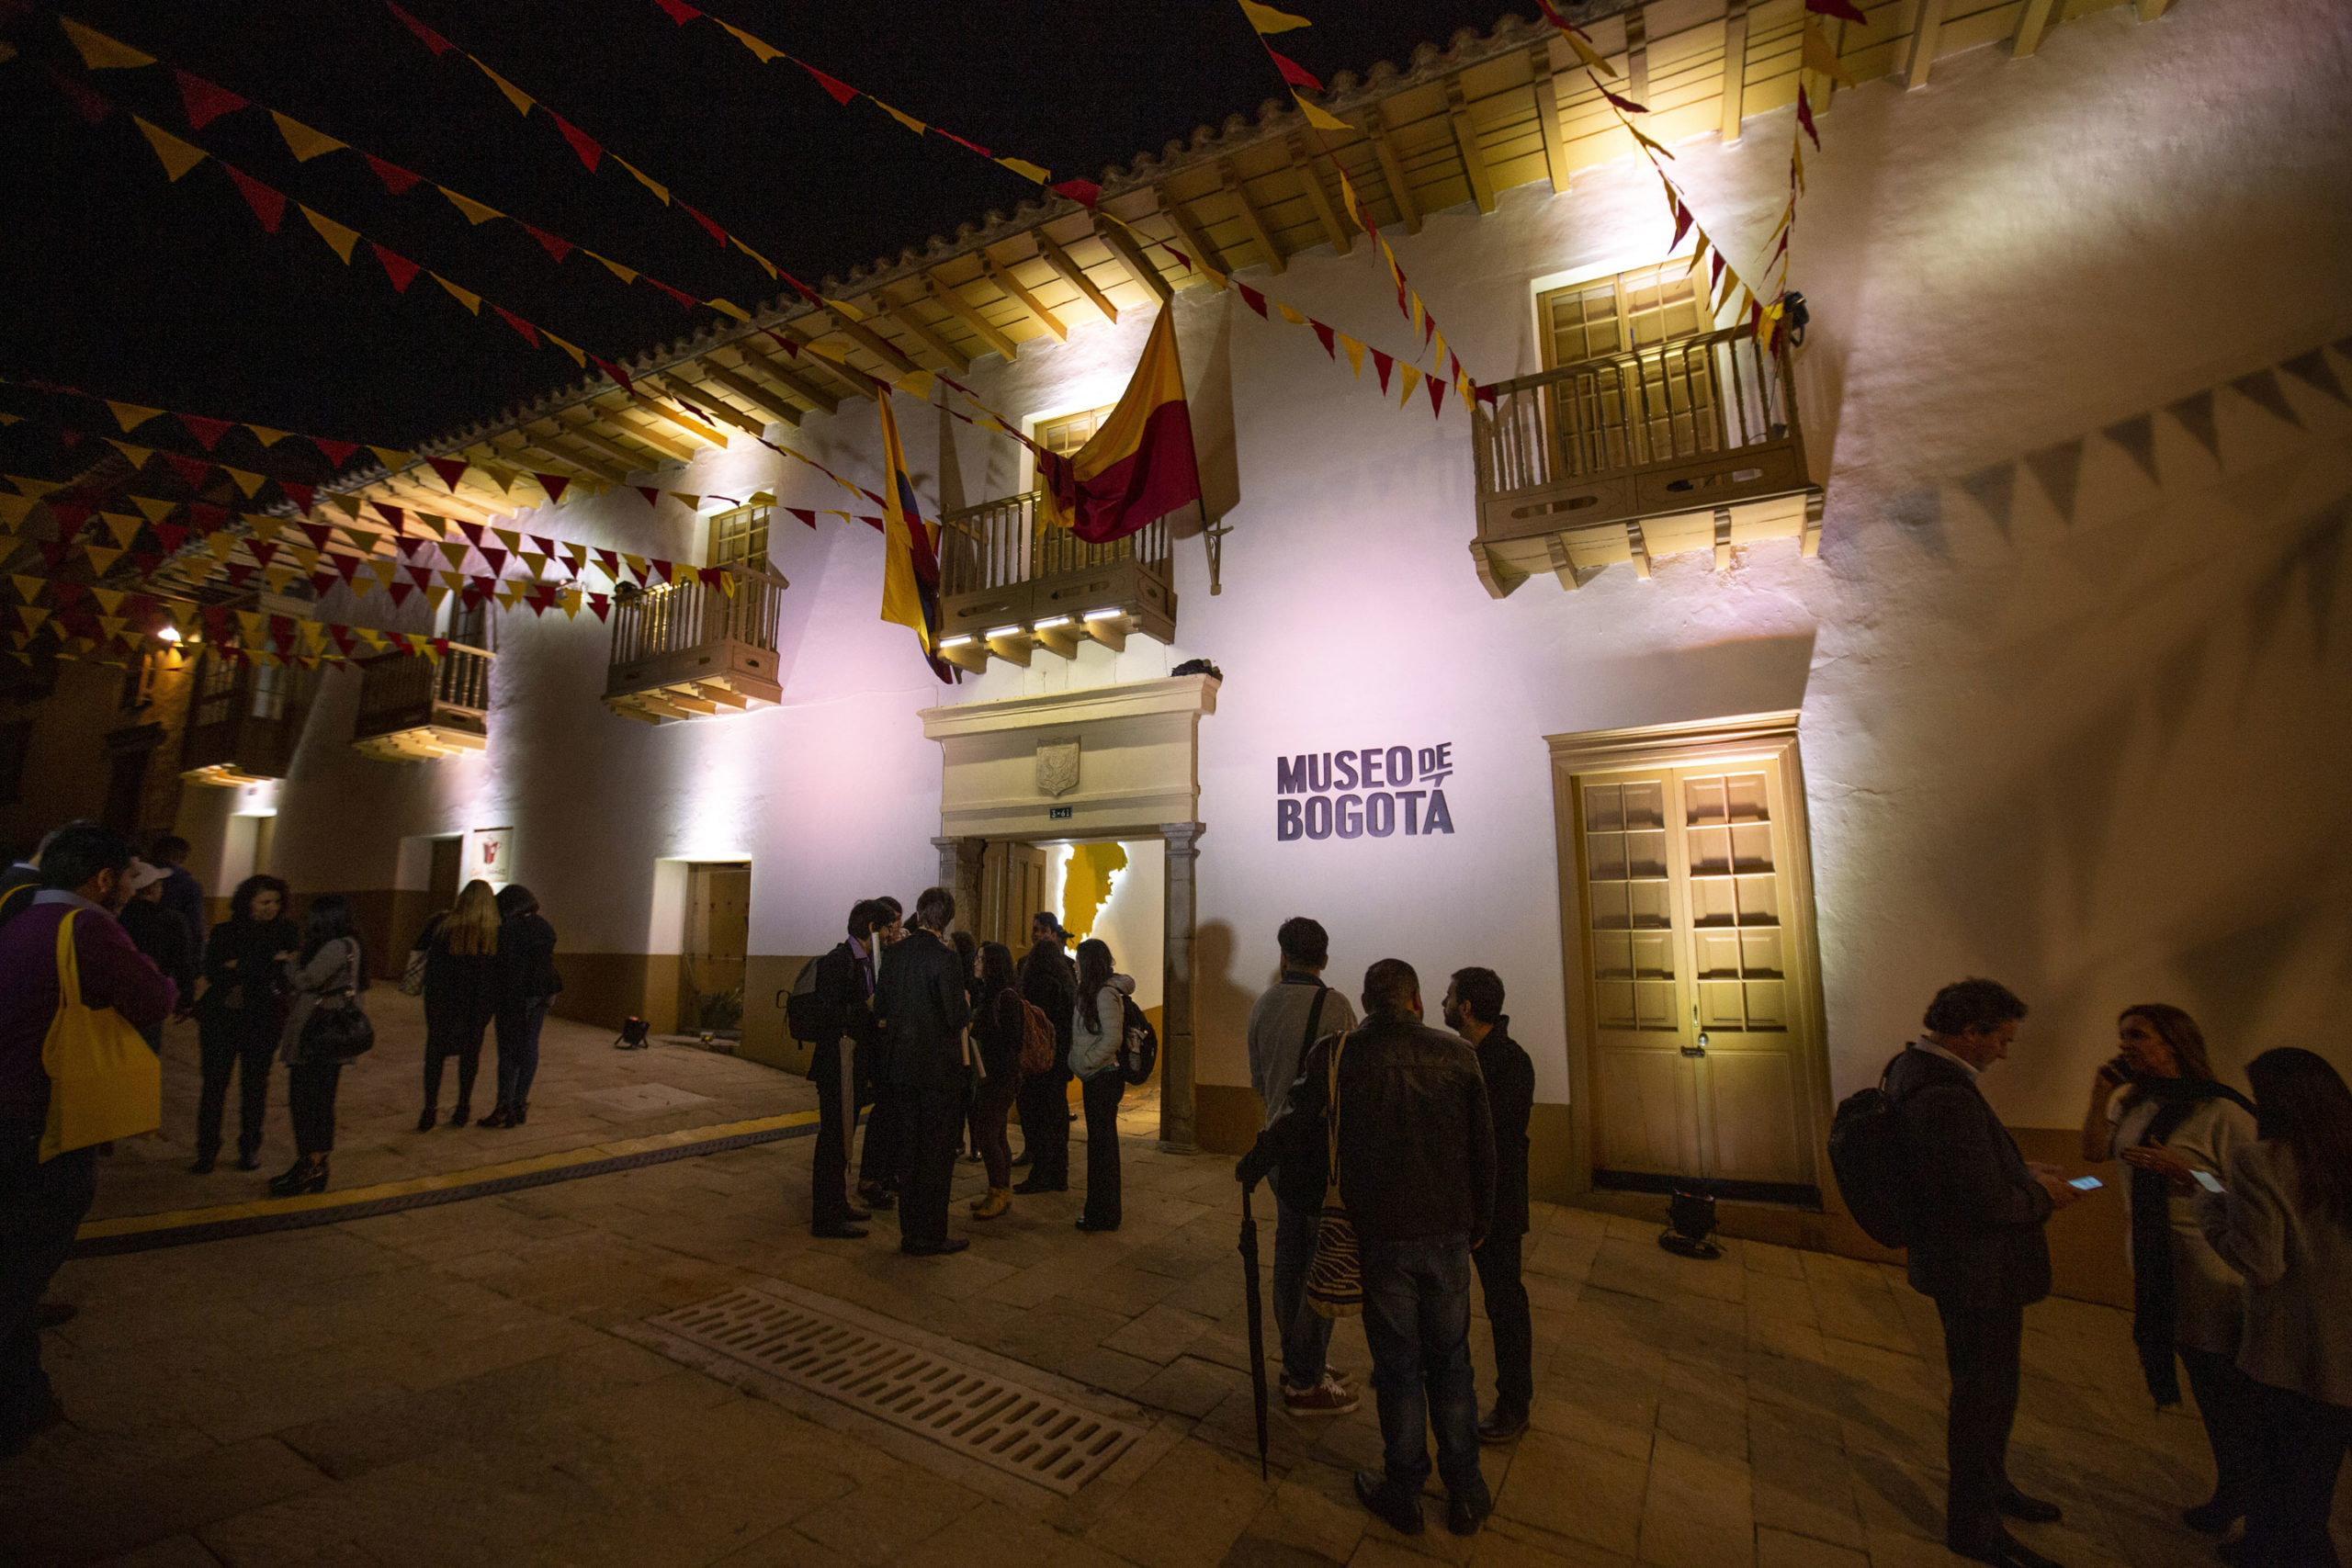 Imagen noticia ‘Imaginar futuros posibles’, una invitación del Museo de Bogotá